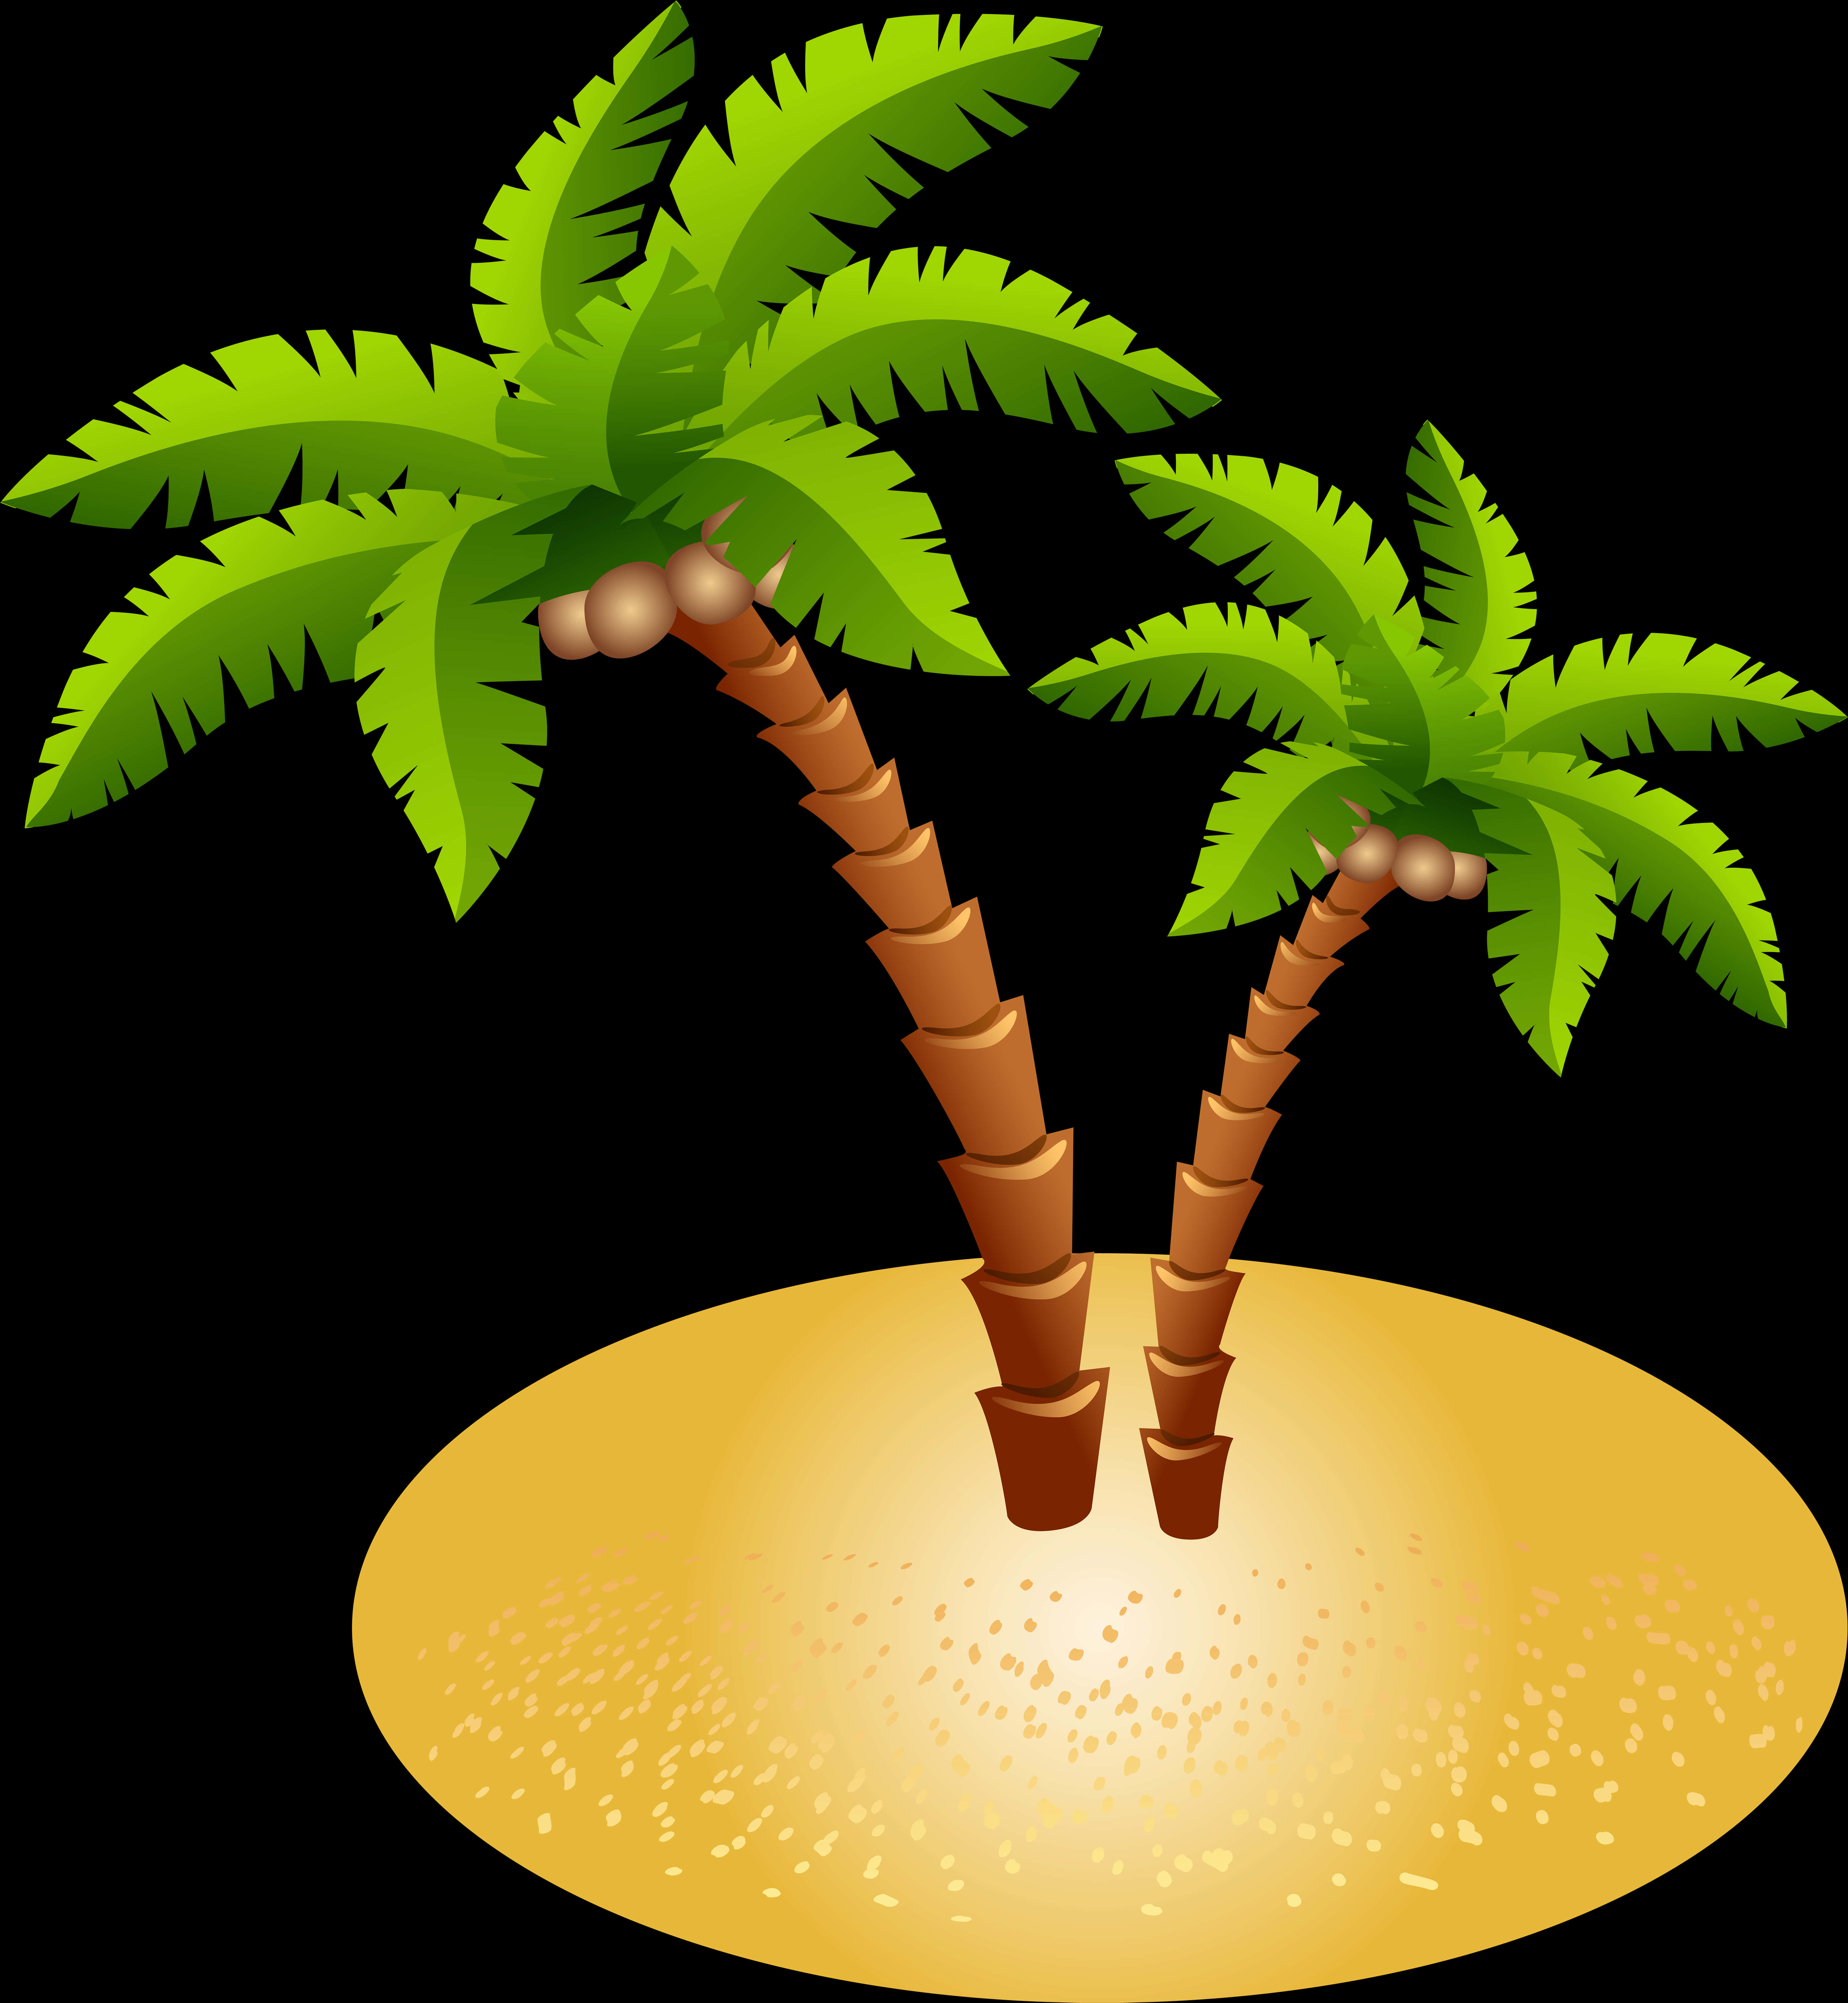 Palm Trees On A Sandy Island